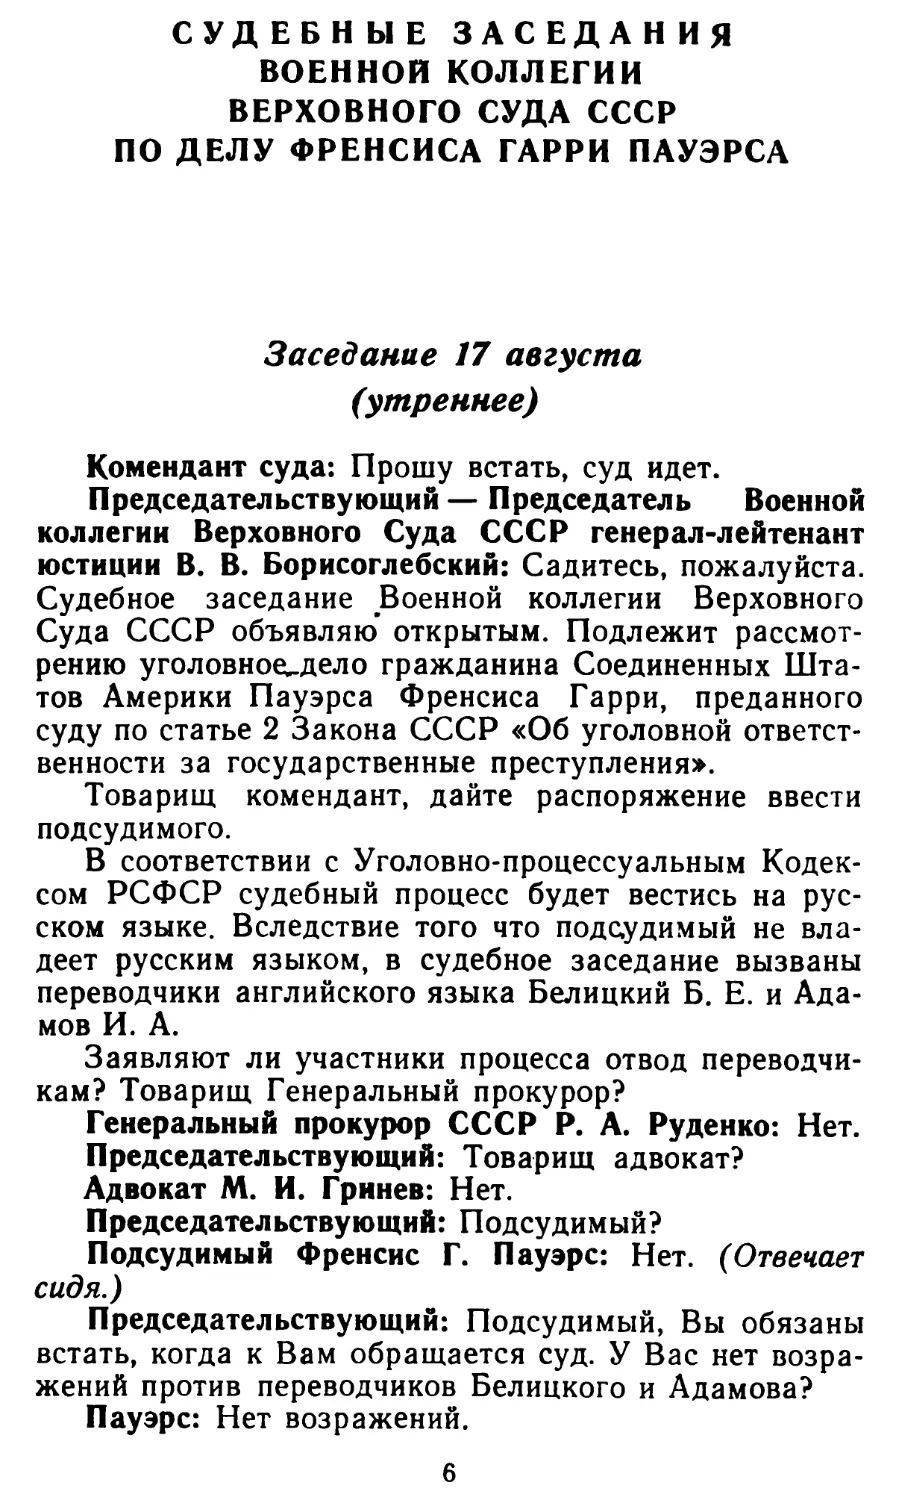 Судебные заседания военной коллегии верховного Суда СССР по делу Френсиса Гарри Пауэрса